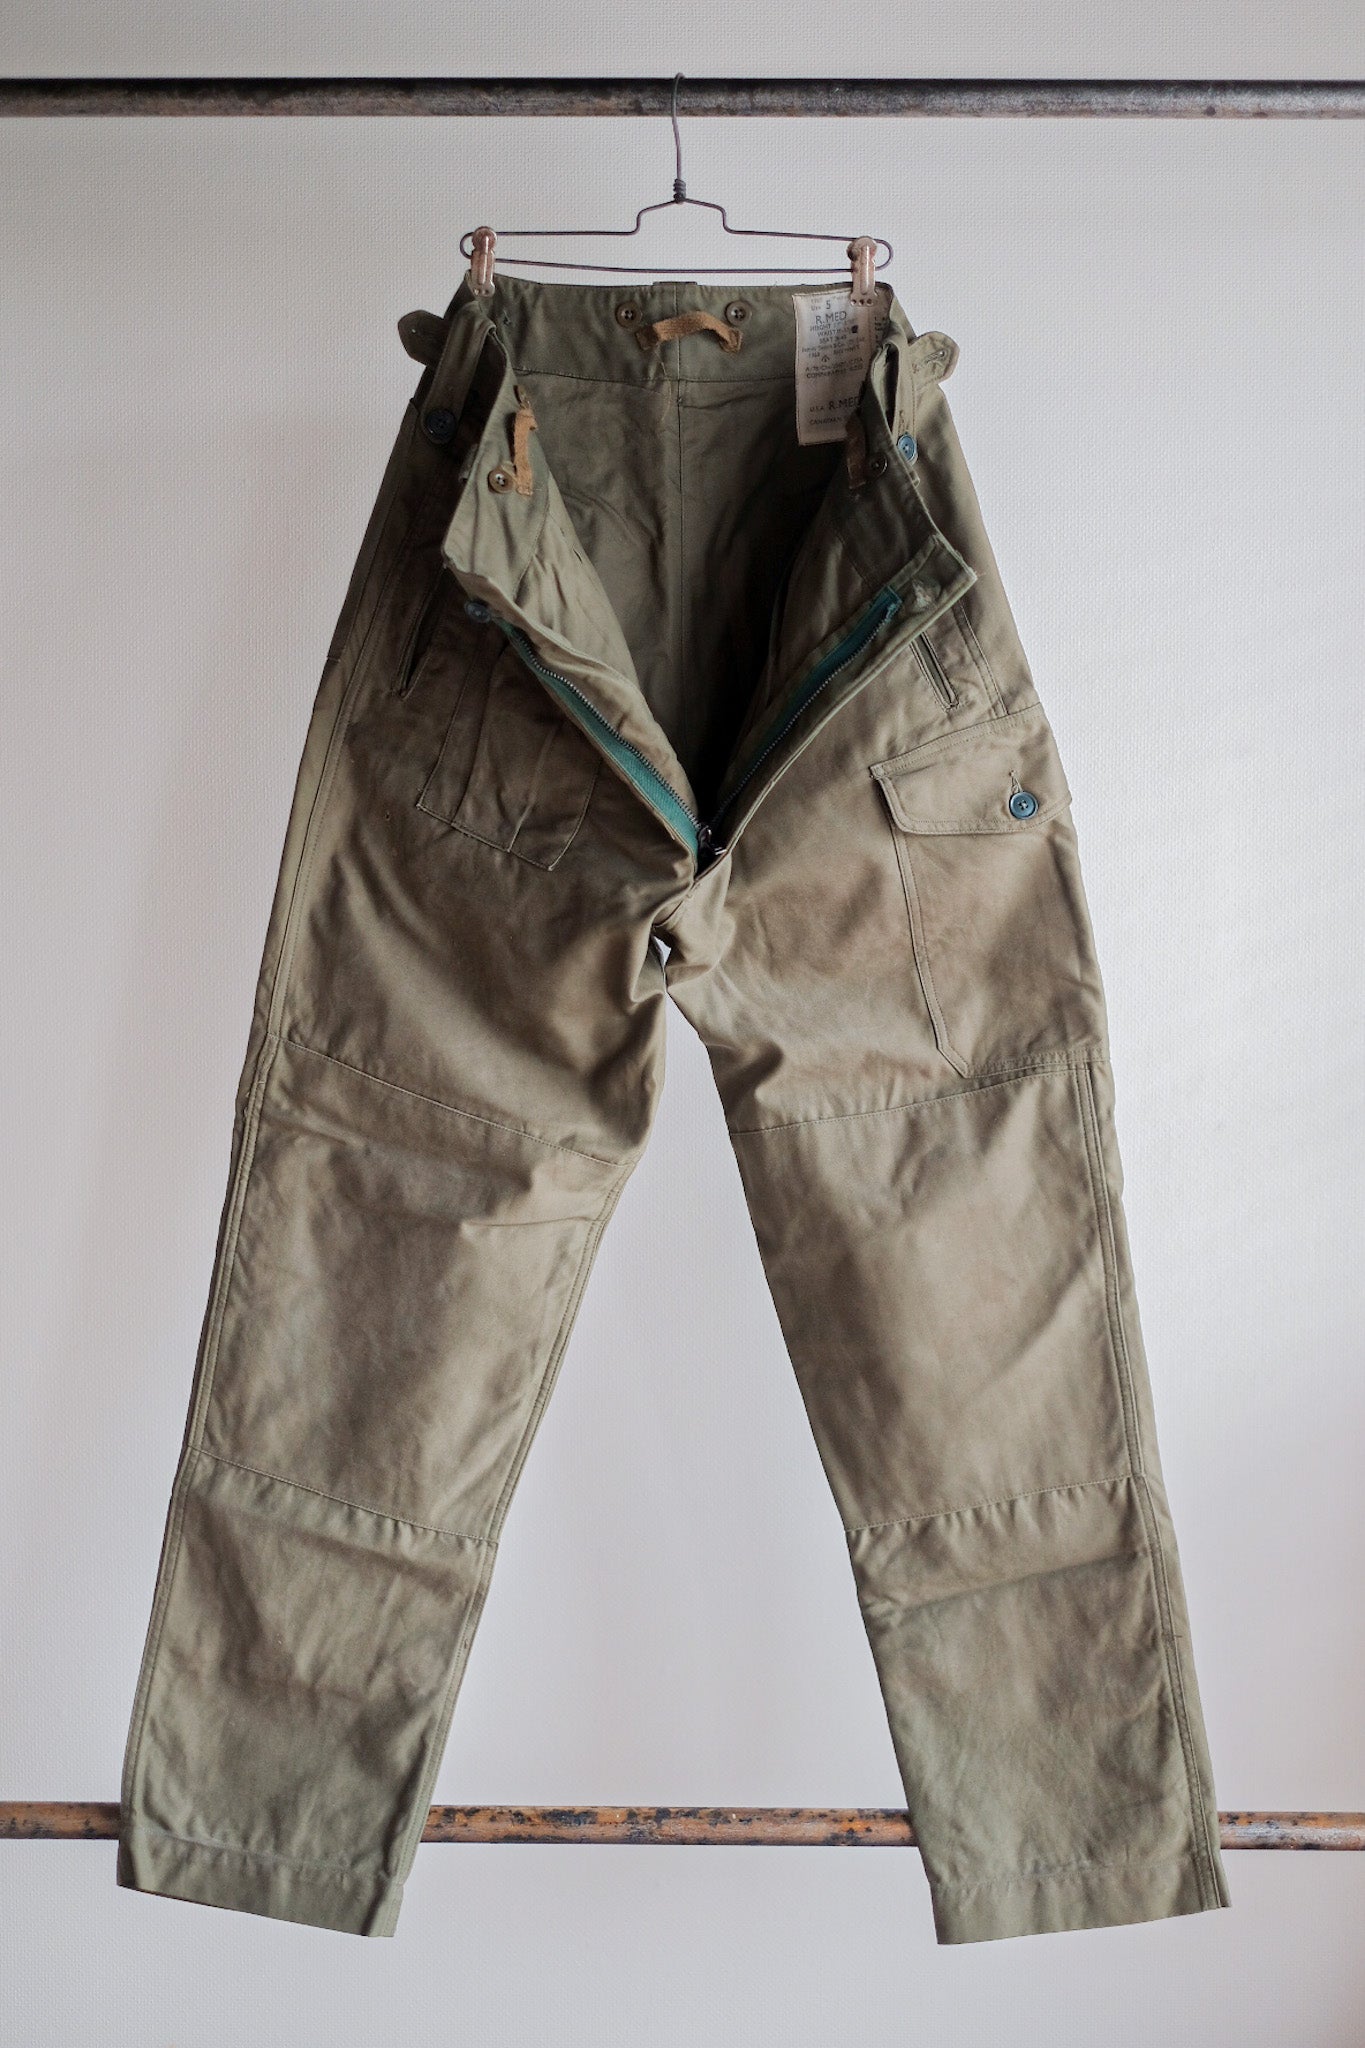 [〜60年代]英國軍隊1960年的圖案戰鬥褲尺寸。5